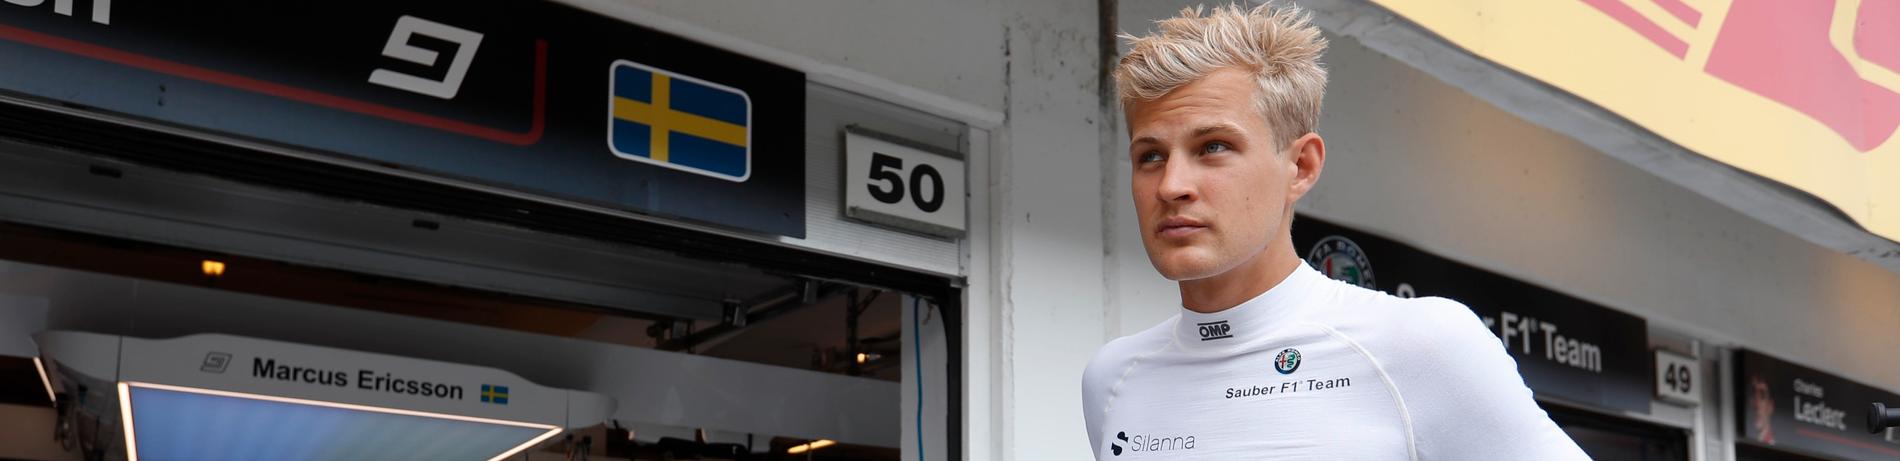 Marcus Ericsson jagar nya poäng i Ungerns GP.